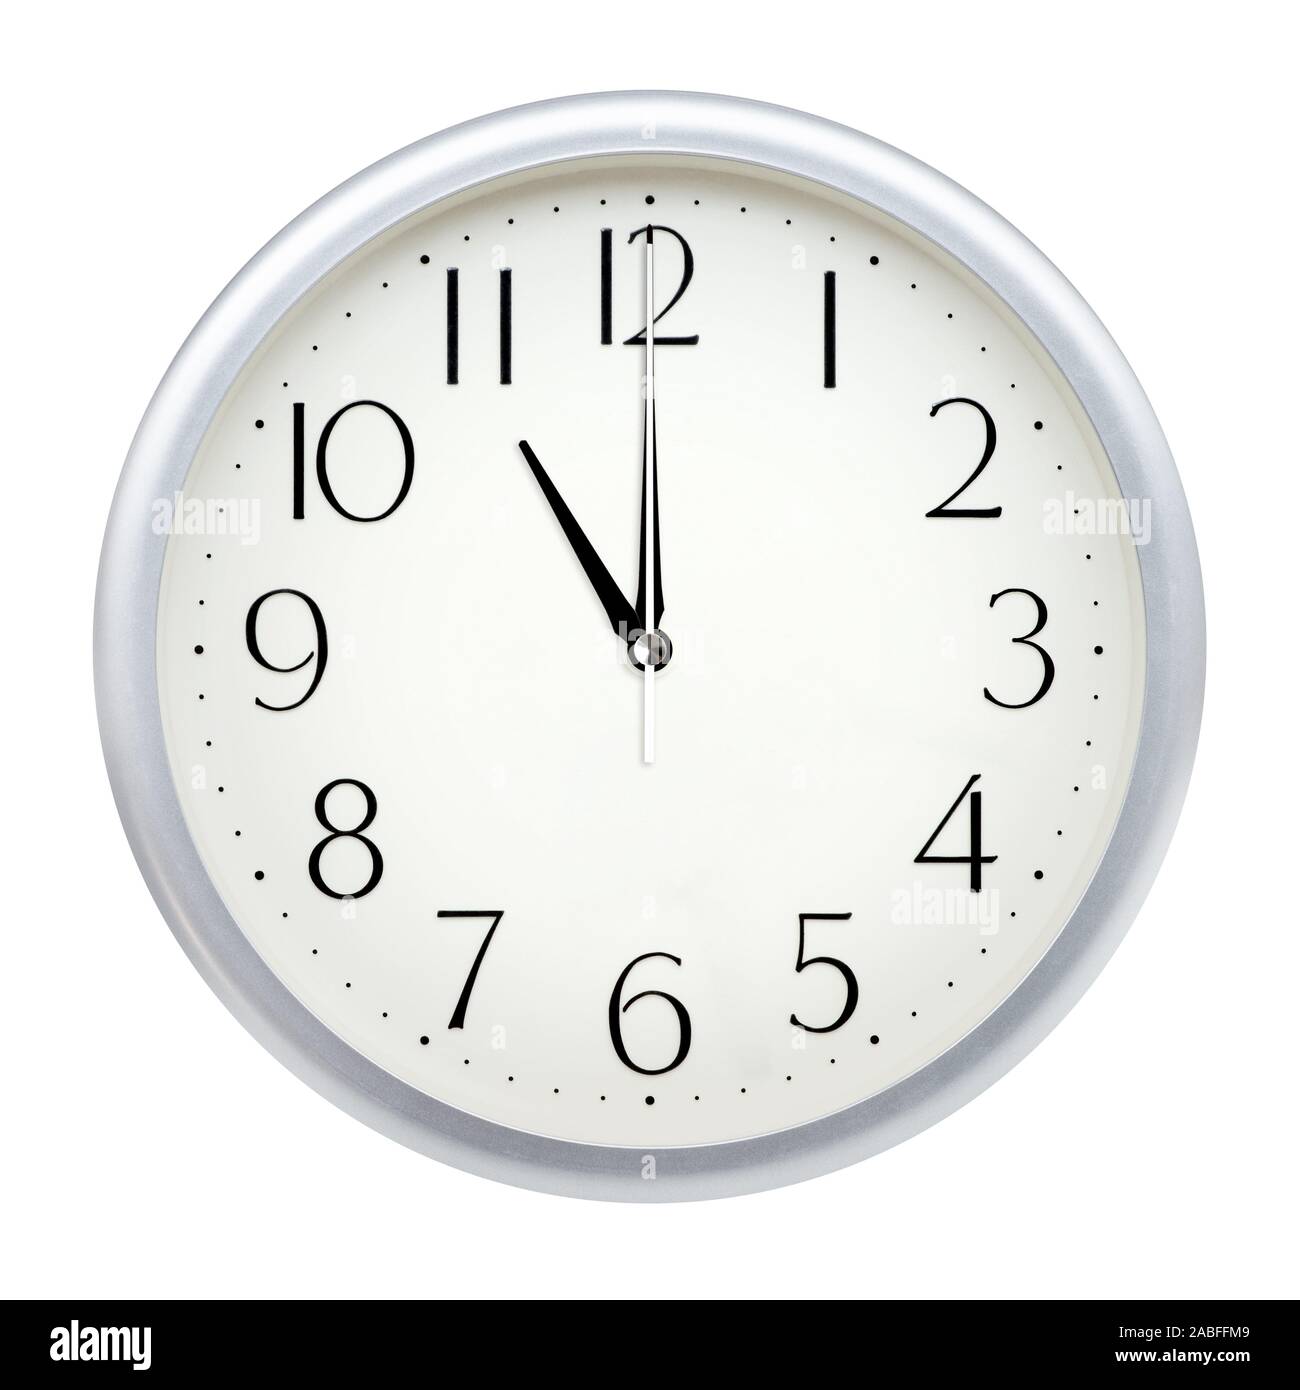 11h horloge Banque d'images détourées - Page 2 - Alamy